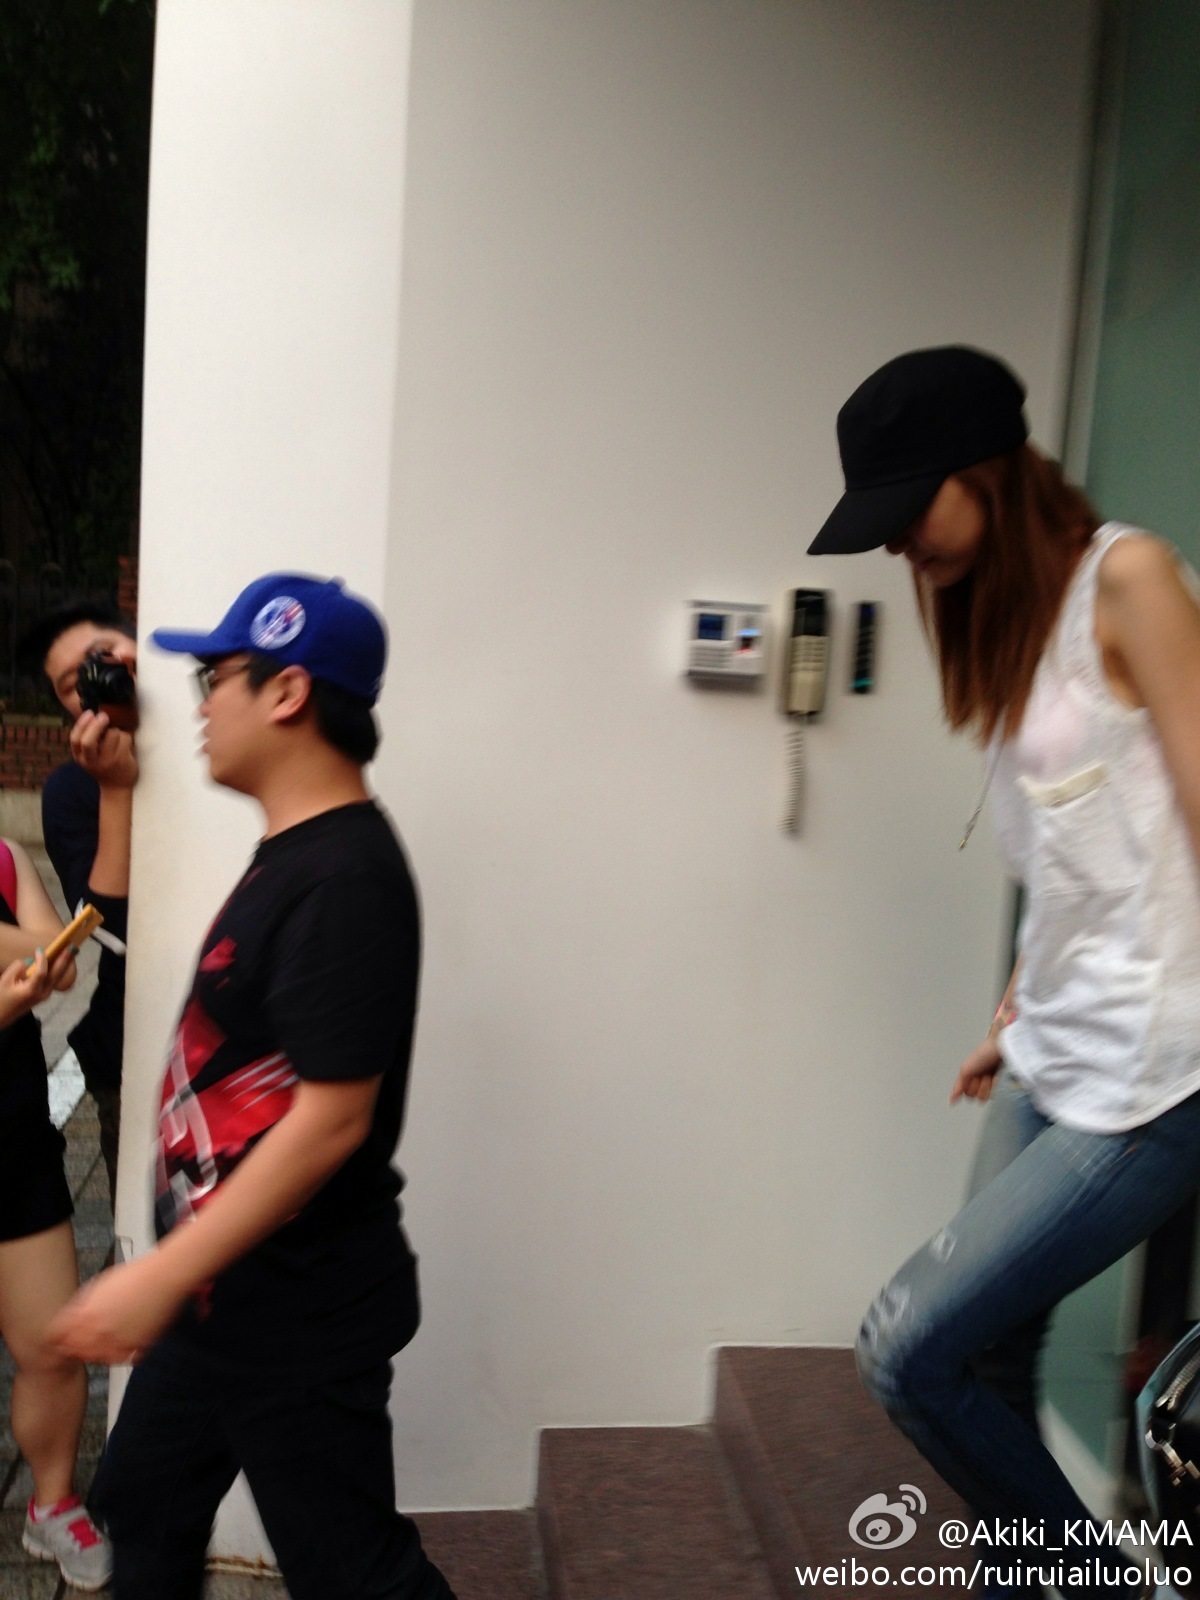 [PIC][07-08-2013]YoonA xuất hiện tại toà nhà SM vào chiều nay 6d767ef2jw1e7e8xqbxm2j20xc18g46g